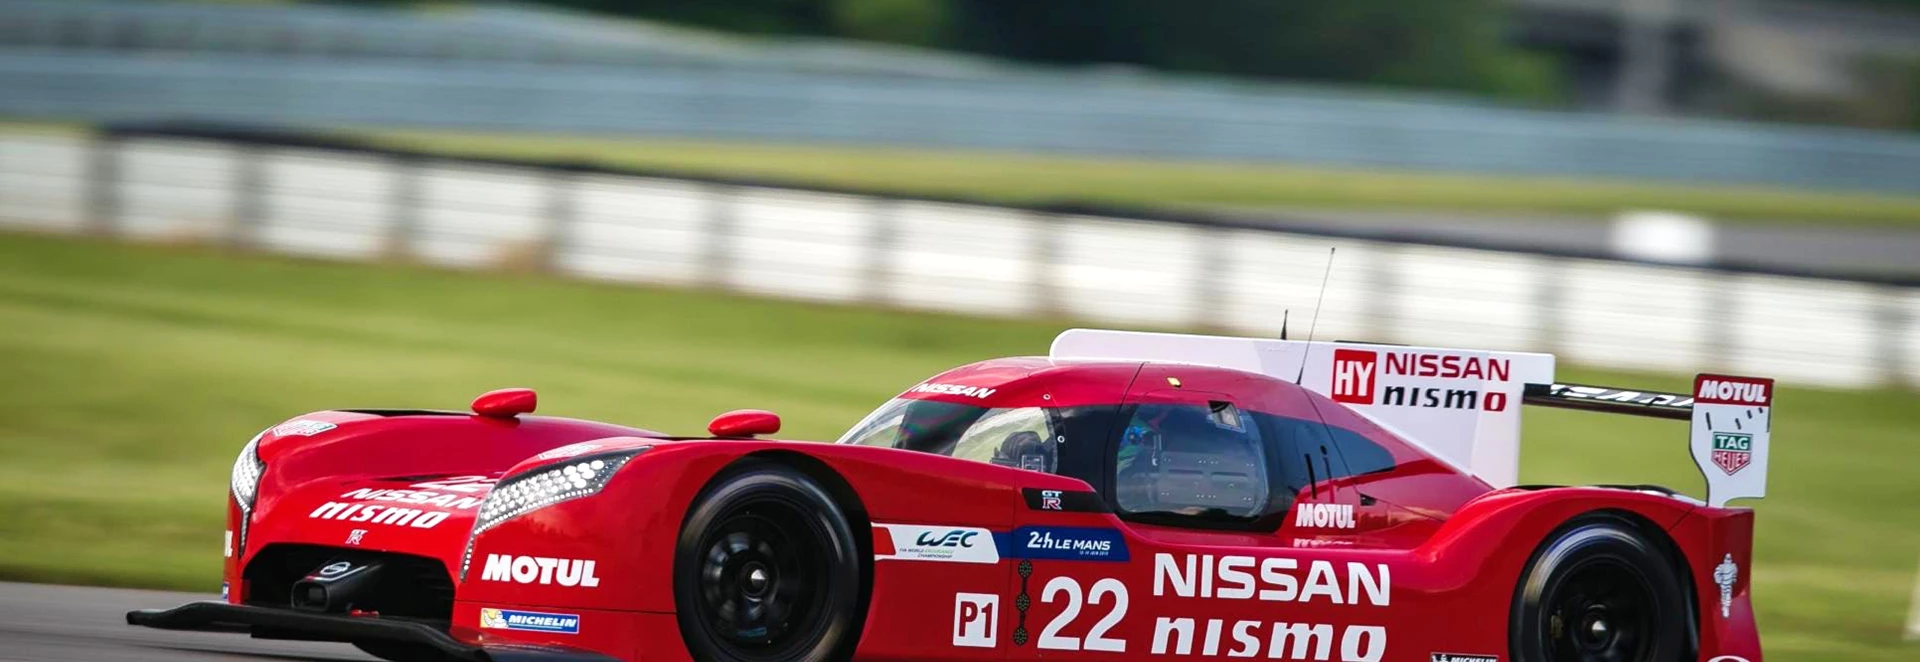 Nissan shelves GT-R LM Nismo Le Mans racer